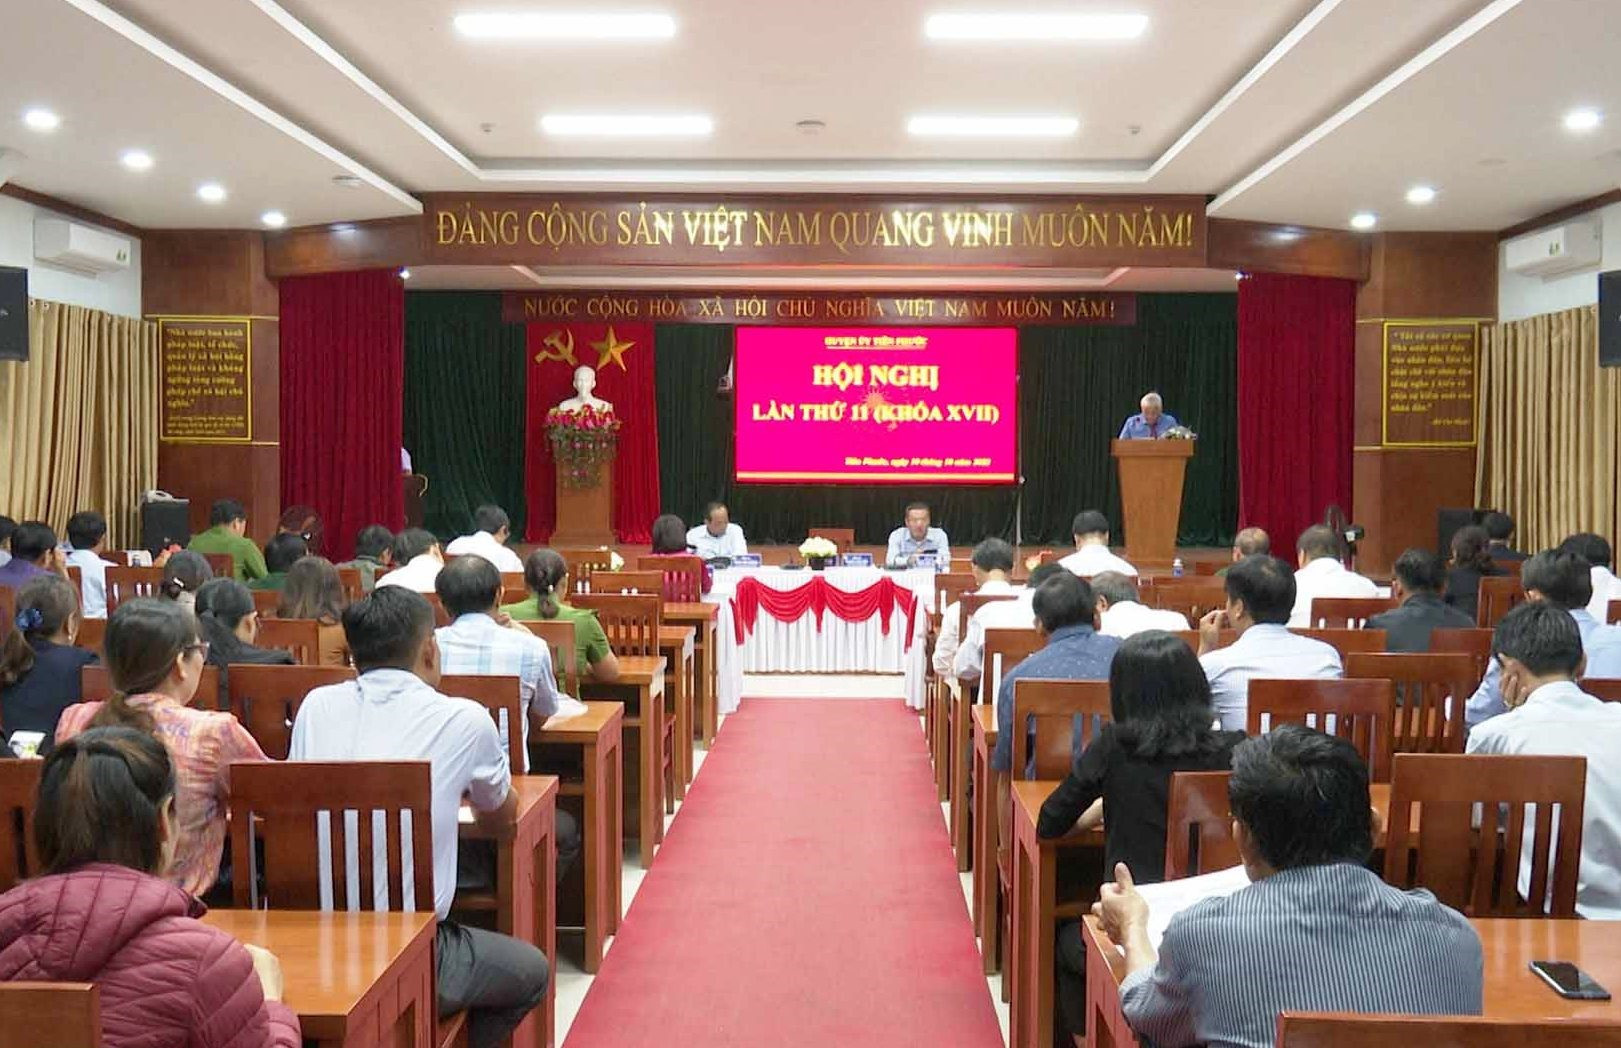 Huyện ủy Tiên Phước tổ chức hội nghị lần thứ 11 (khóa XVII). ẢNh: N.HƯNG